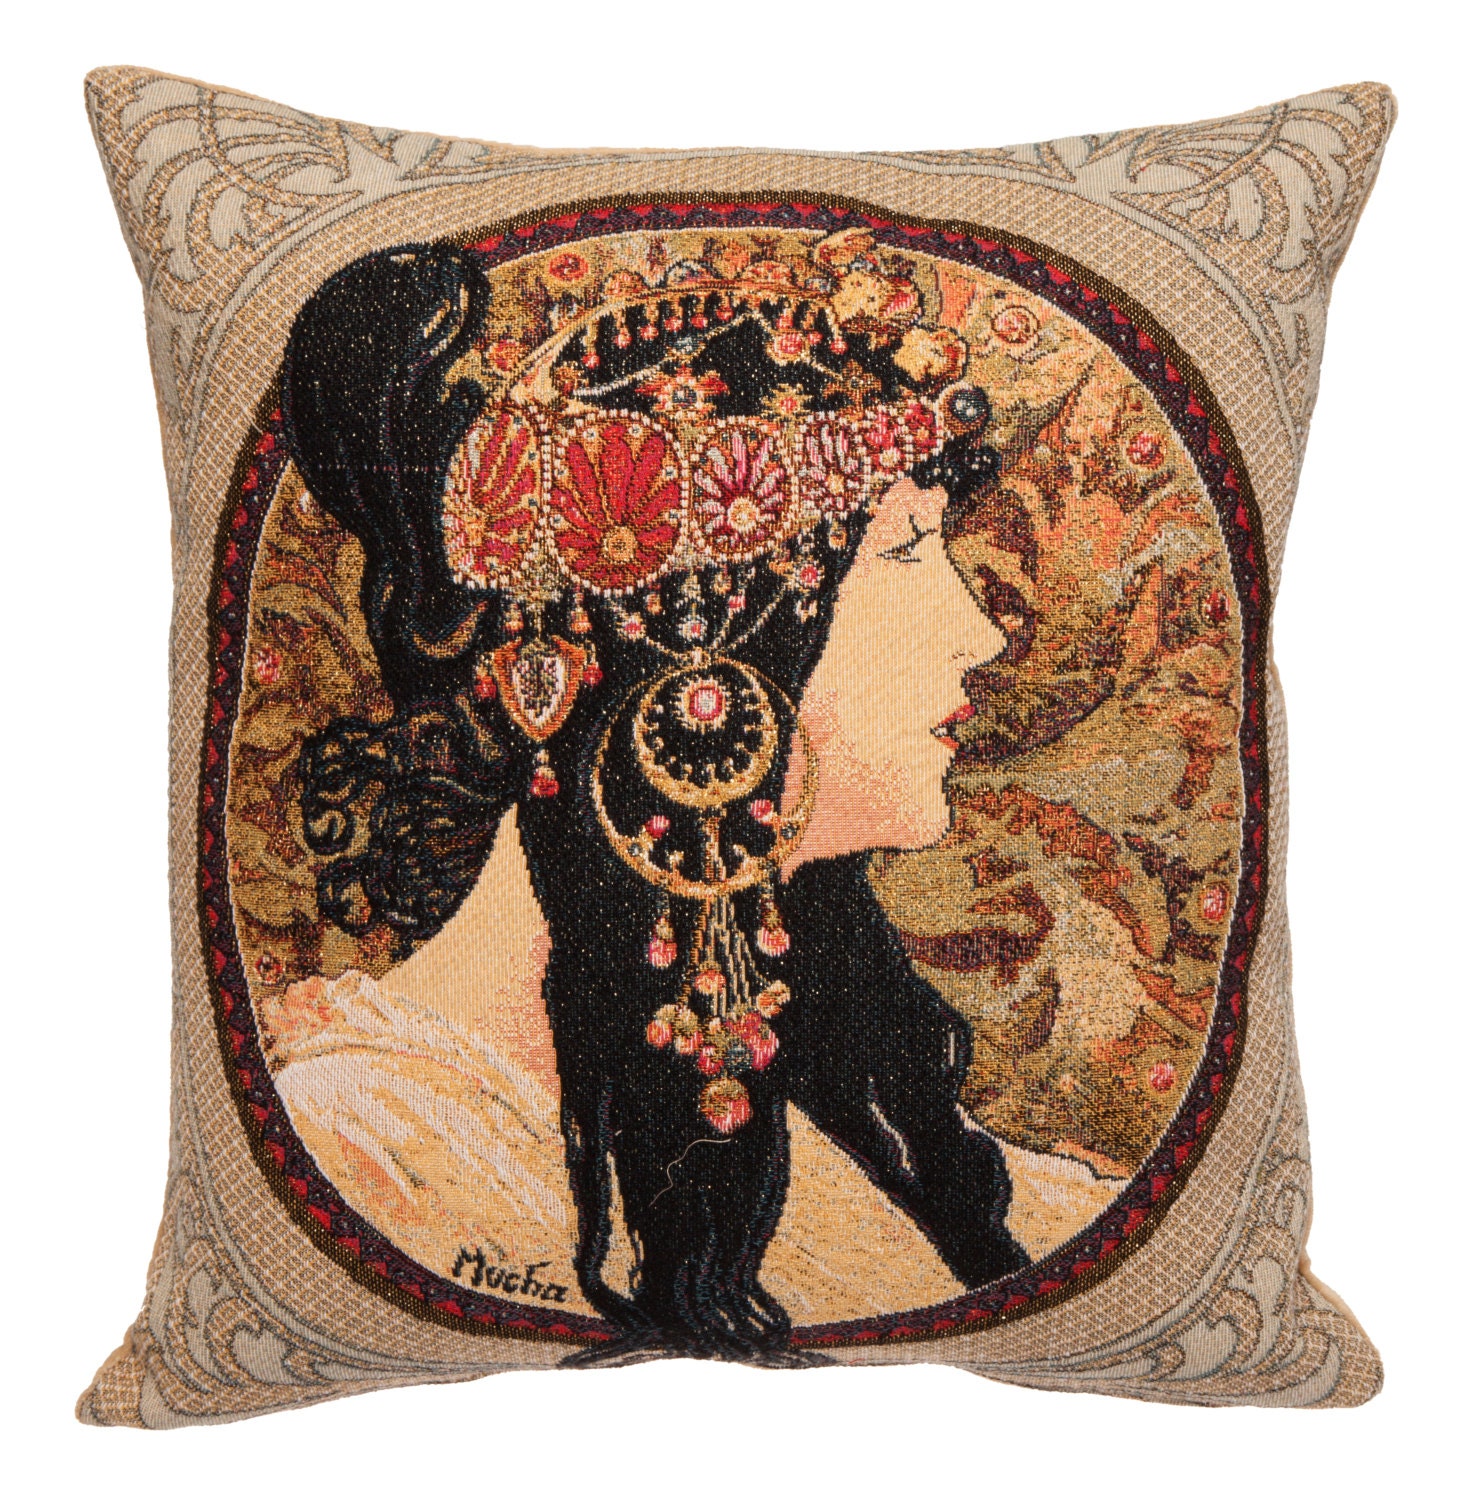 Mucha decor belgian tapestry pillow Mucha gobelin pillow cover Mucha gift